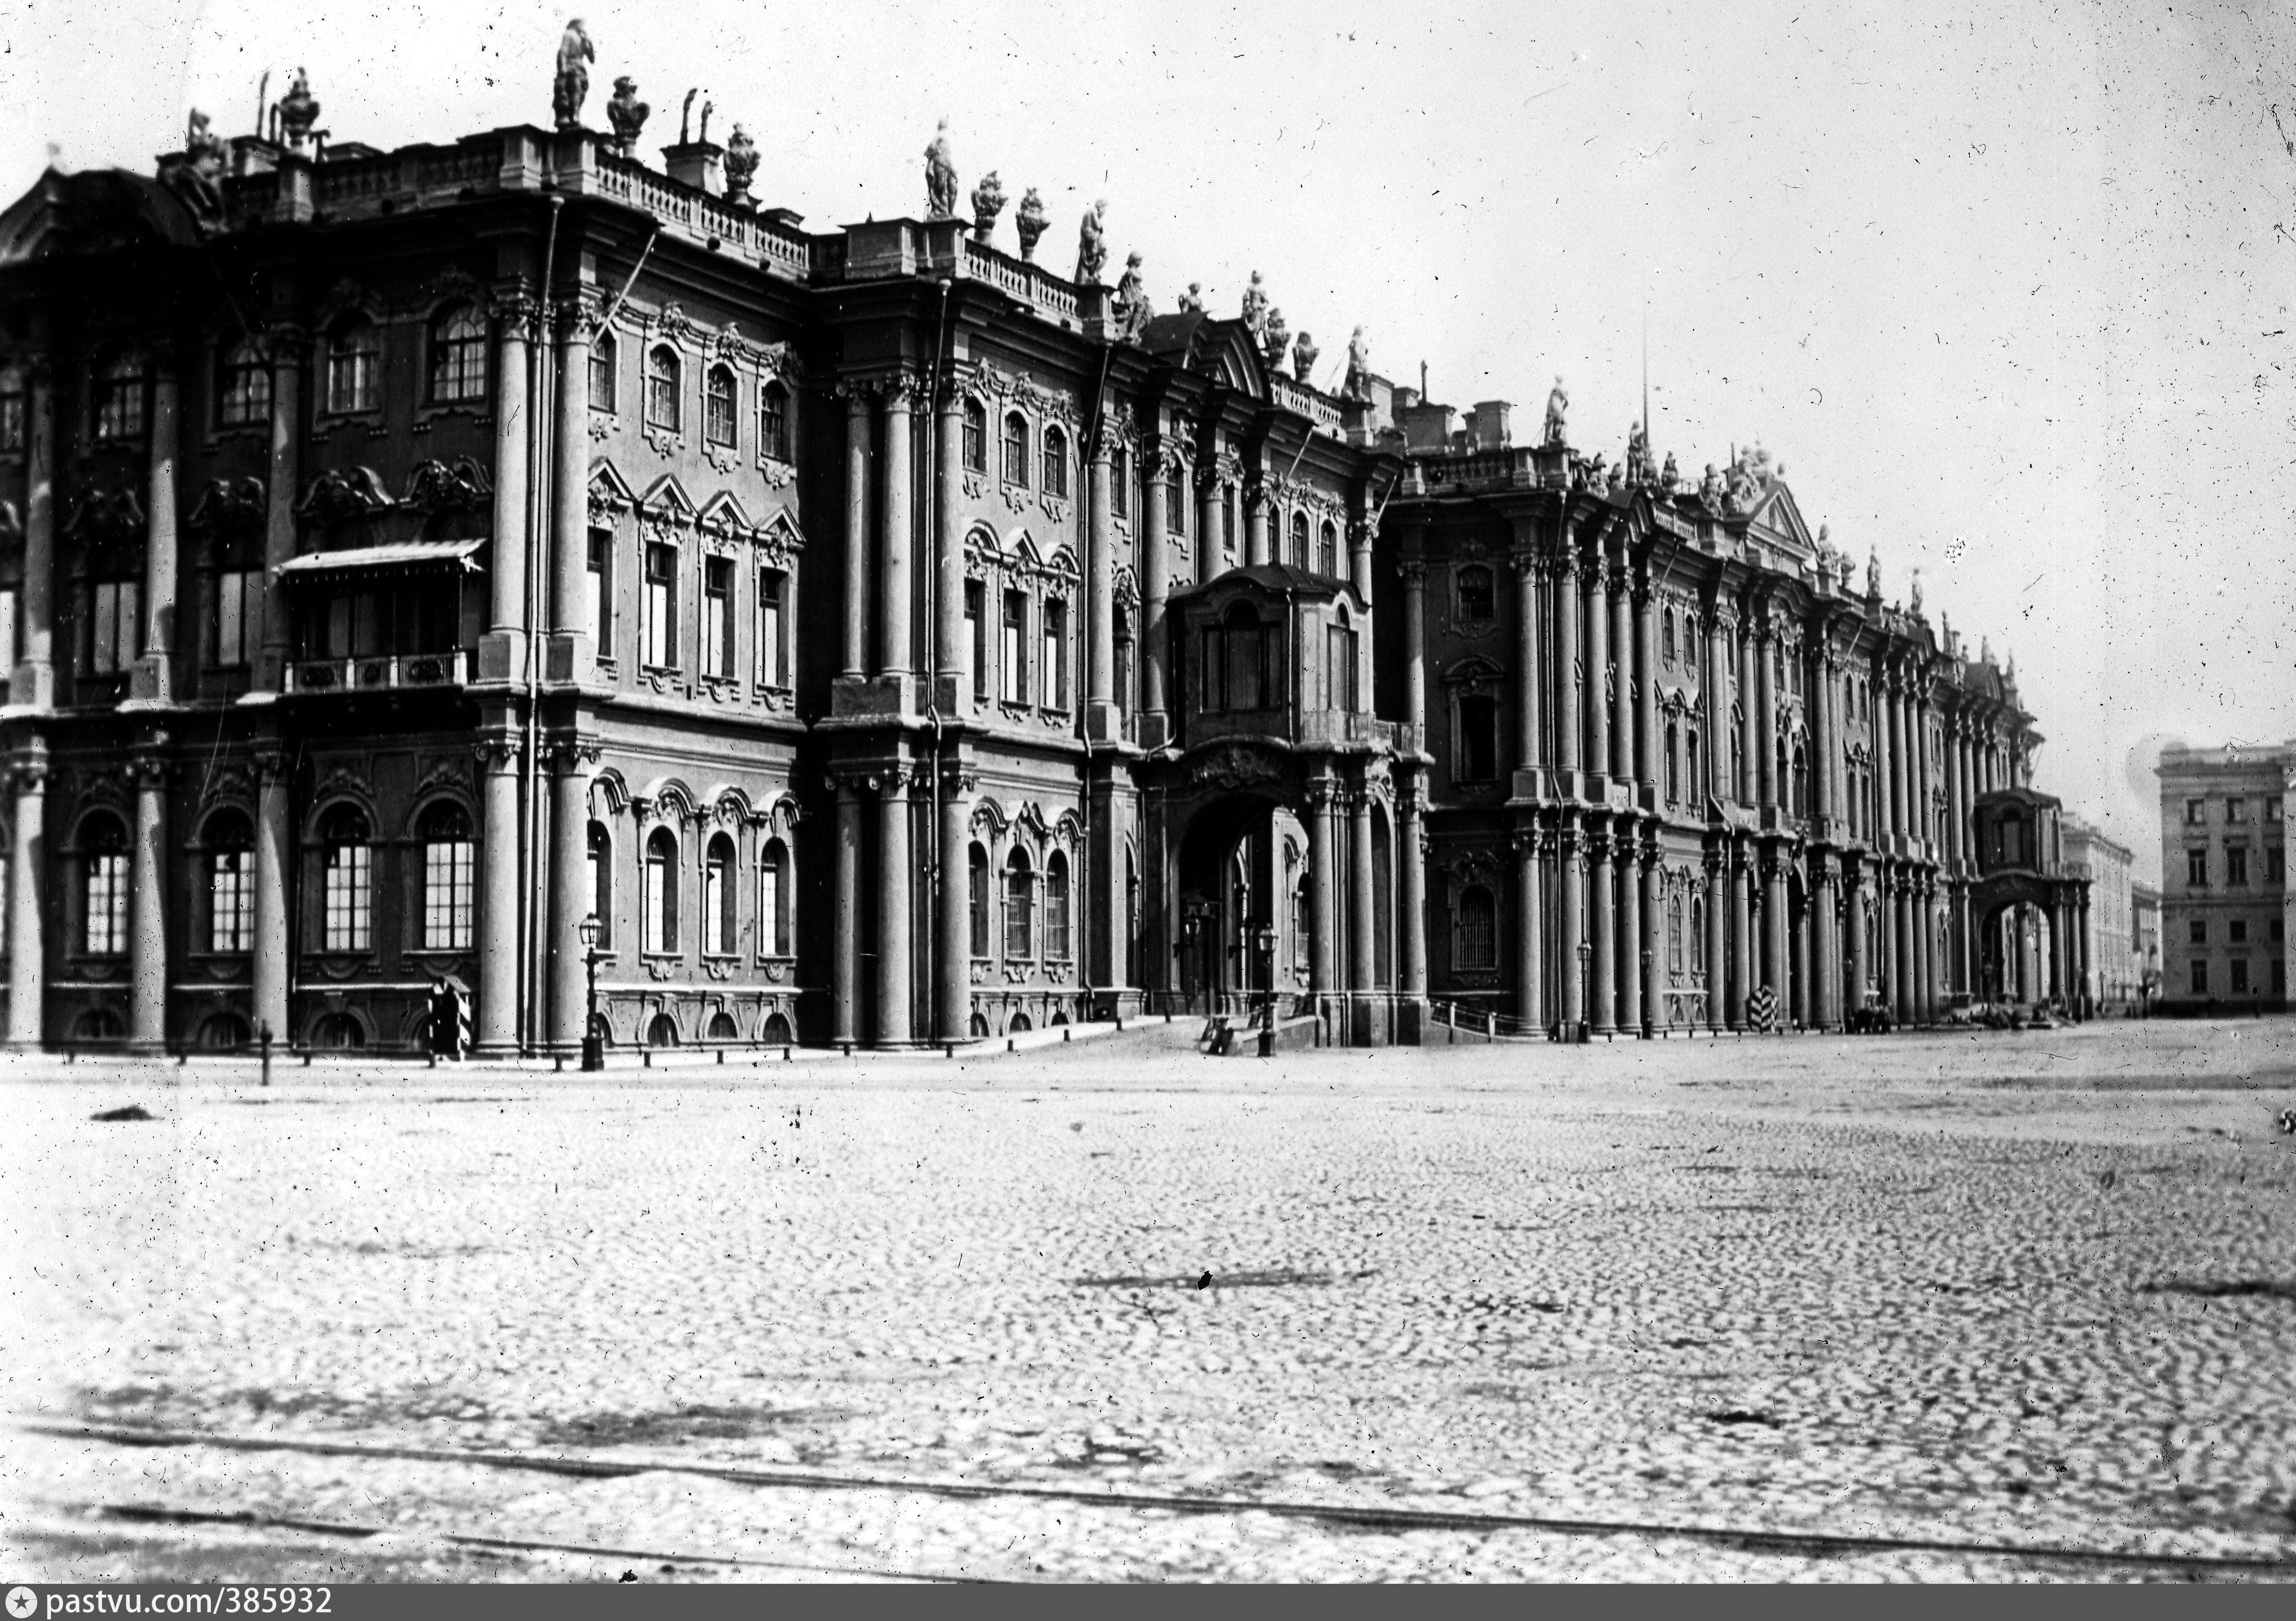 Зимний дворец в годы войны фото